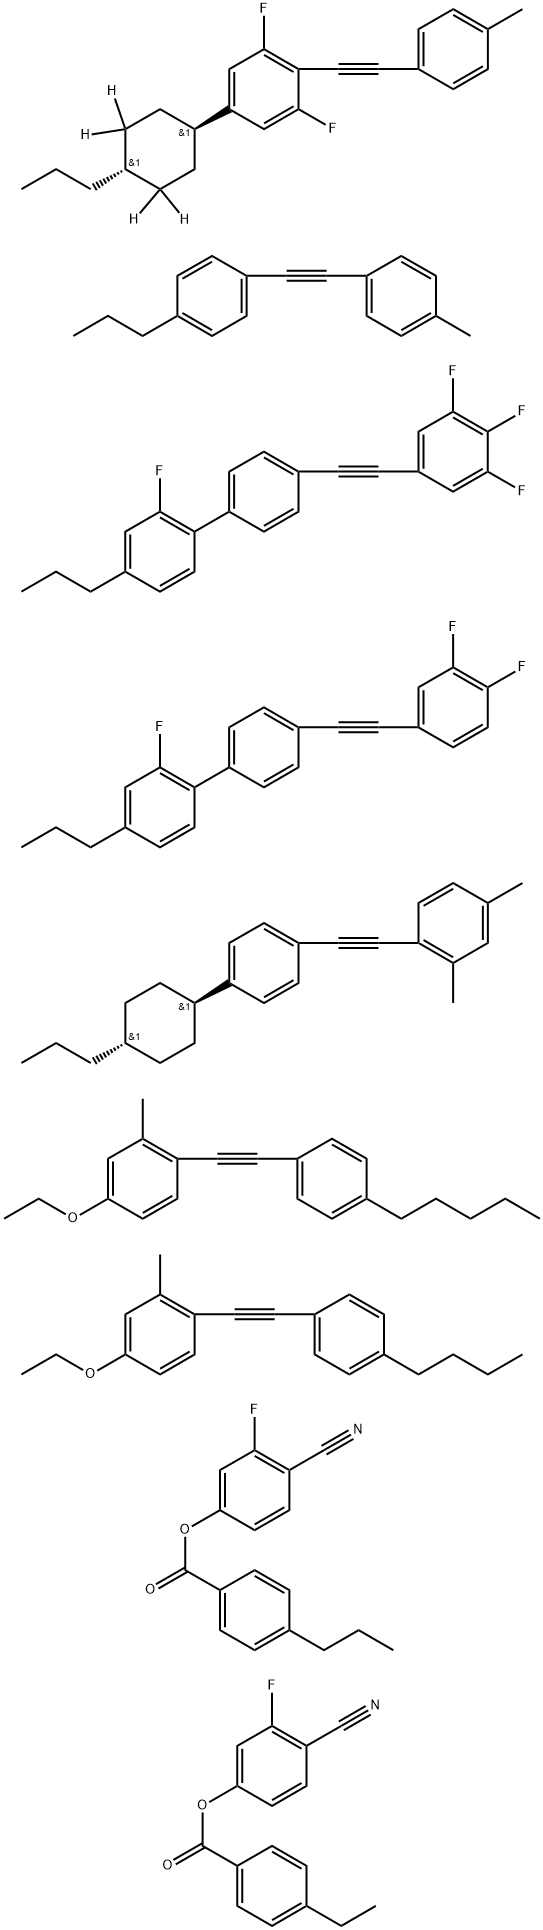 Benzoic acid, 4-ethyl-, 4-cyano-3-fluorophenyl ester, mixt. with 1-[(4-butylphenyl)ethynyl]-4-ethoxy-2-methylbenzene, 4-cyano-3-fluorophenyl 4-propylbenzoate, 1,3-difluoro-2-[(4-methylphenyl)ethynyl]-5-(trans-4-propylcyclohexyl-3,3,5,5-d4)benzene, 4′-[(3,4-difluorophenyl)ethynyl]-2-fluoro-4-propyl-1,1′-biphenyl, 2,4-dimethyl-1-[[4-(trans-4-propylcyclohexyl)phenyl]ethynyl]benzene, 4-ethoxy-2-methyl-1-[(4-pentylphenyl)ethynyl]benzene, 2-fluoro-4-propyl-4′-[(3,4,5-trifluorophenyl)ethynyl]-1,1′-biphenyl and 1-[(4-methylphenyl)ethynyl]-4-propylbenzene Struktur